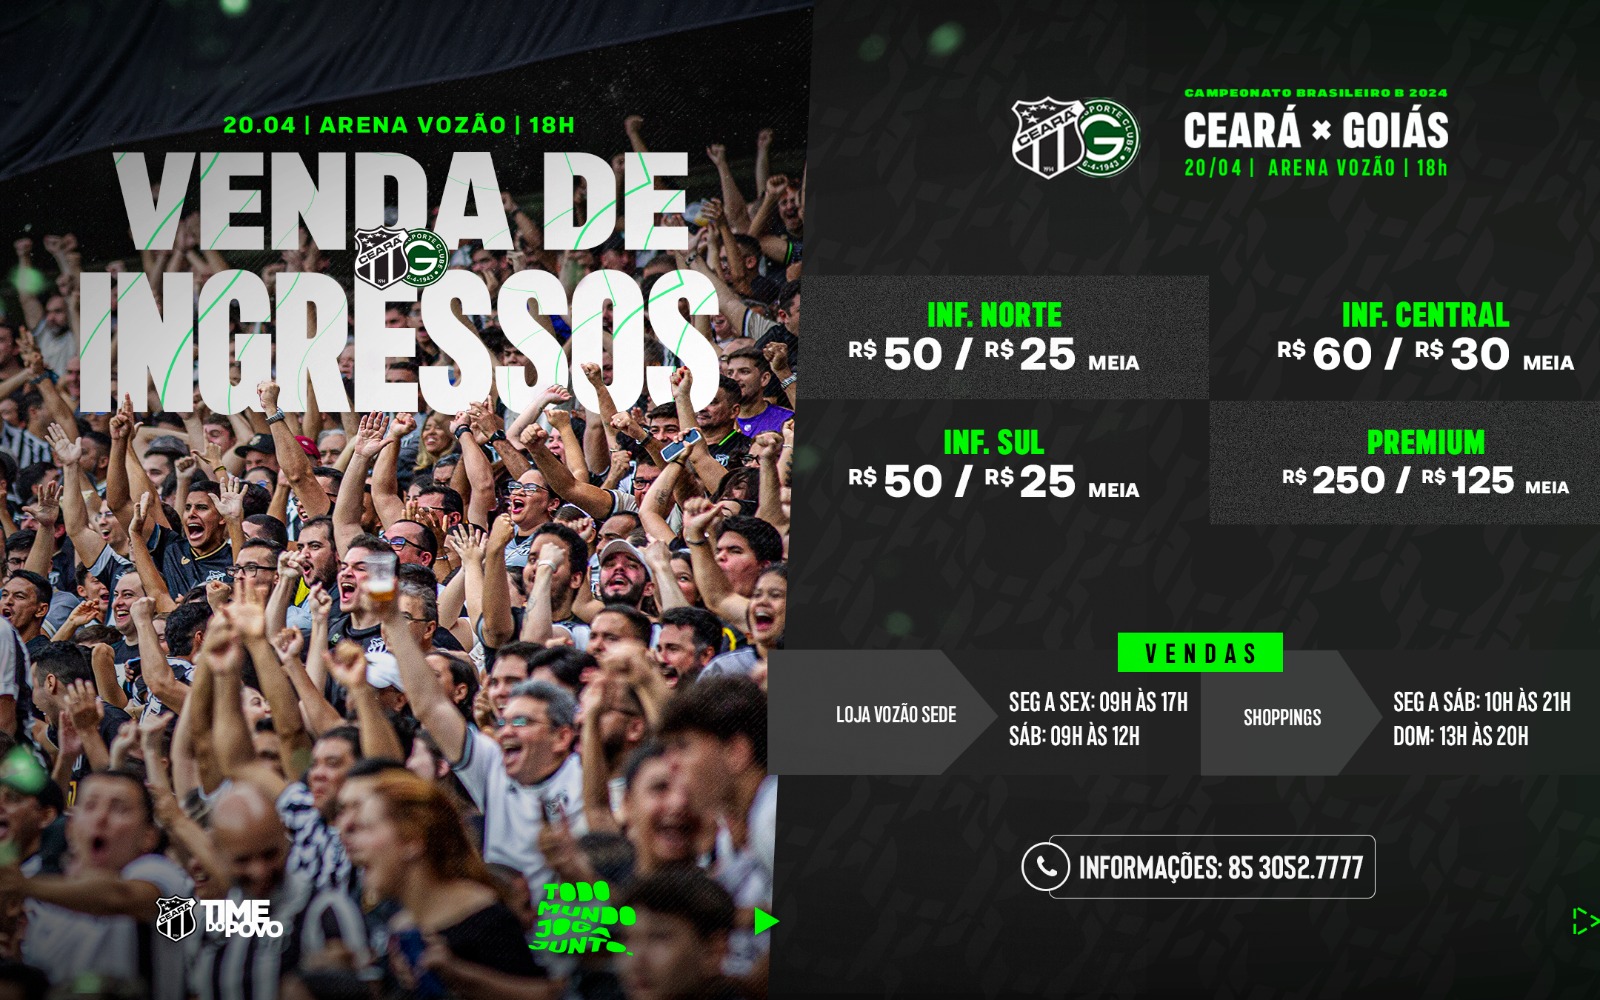 Ingressos para a partida de estreia do Vozão no Campeonato Brasileiro estarão disponíveis à venda a partir desta terça-feira